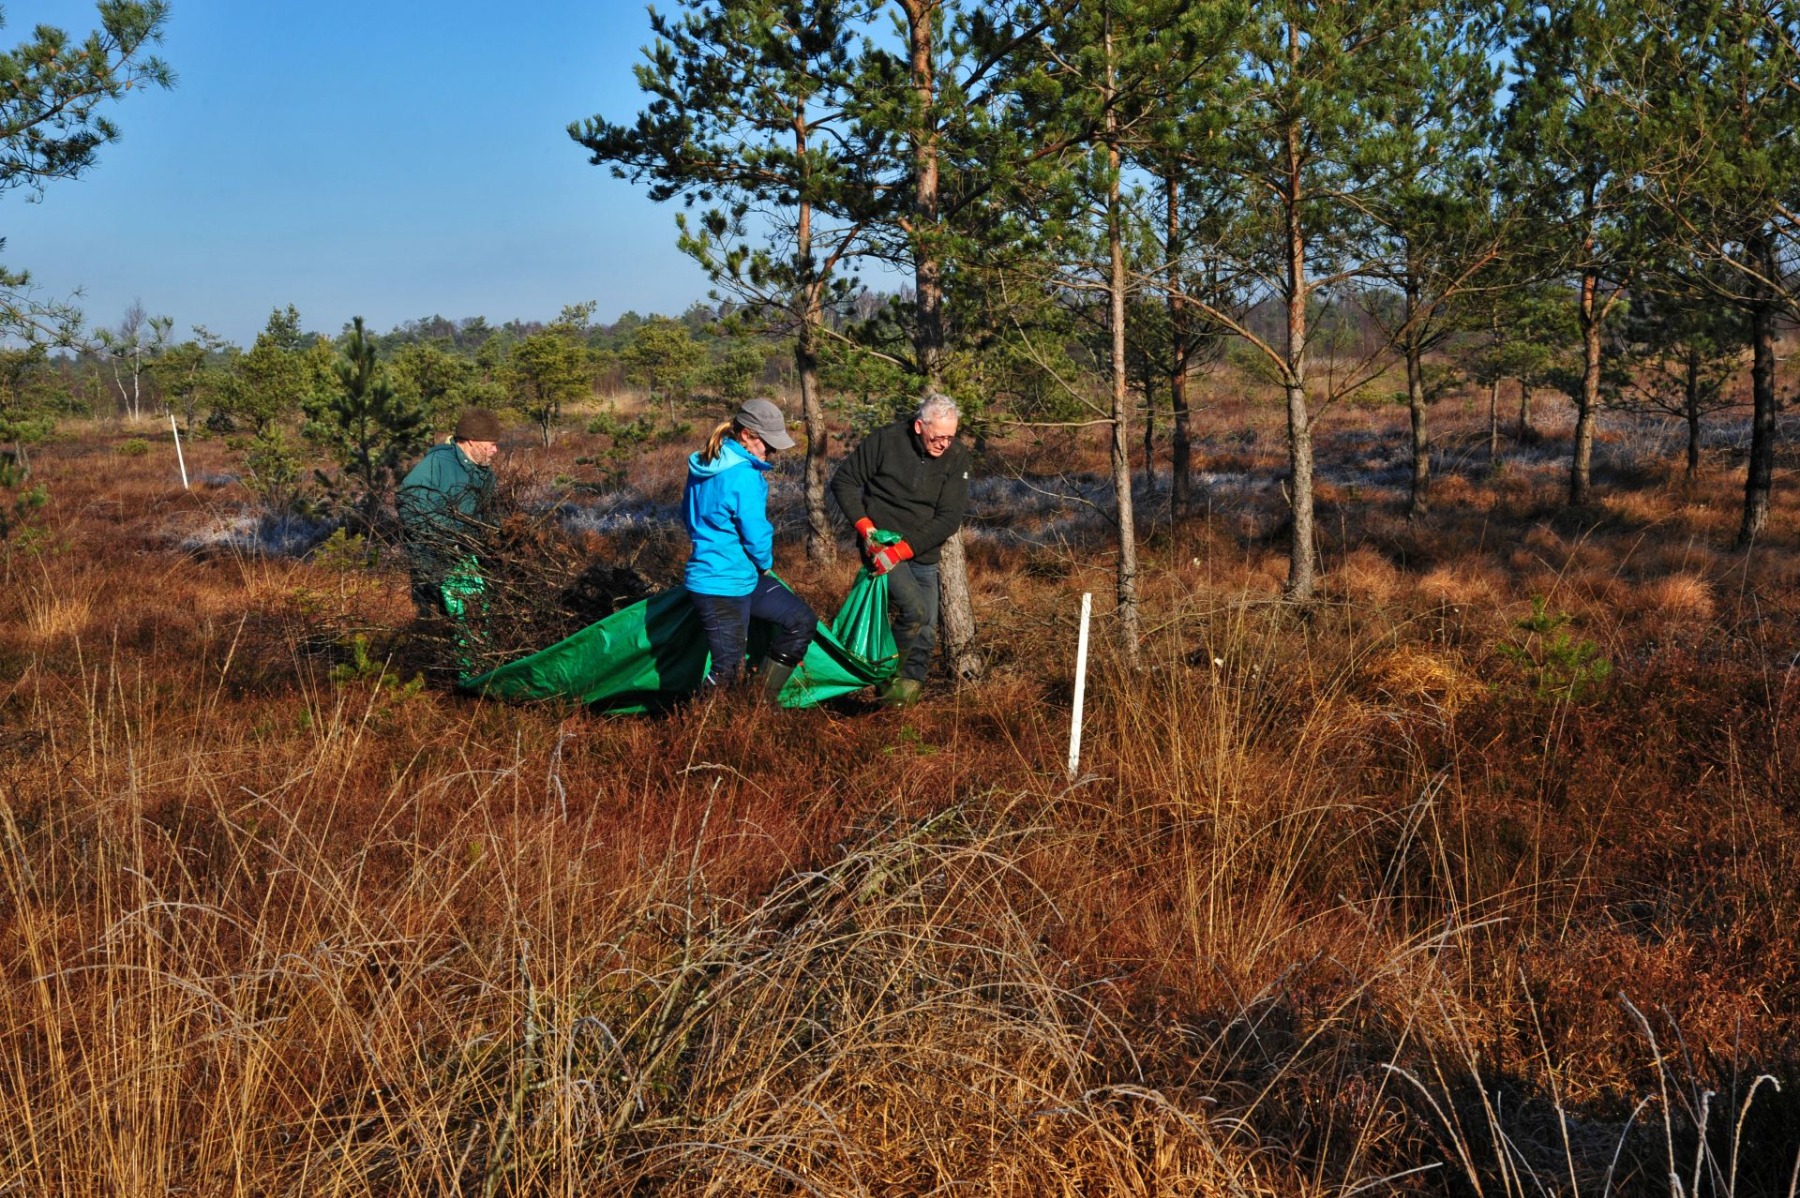 Naturschutzeinsatz mit Unterstützung durch ehrenamtliche Helfer auf einer wertvollen Regenerationsfläche im Hohen Moor. Foto: ÖNSOR, H. B. Schikora